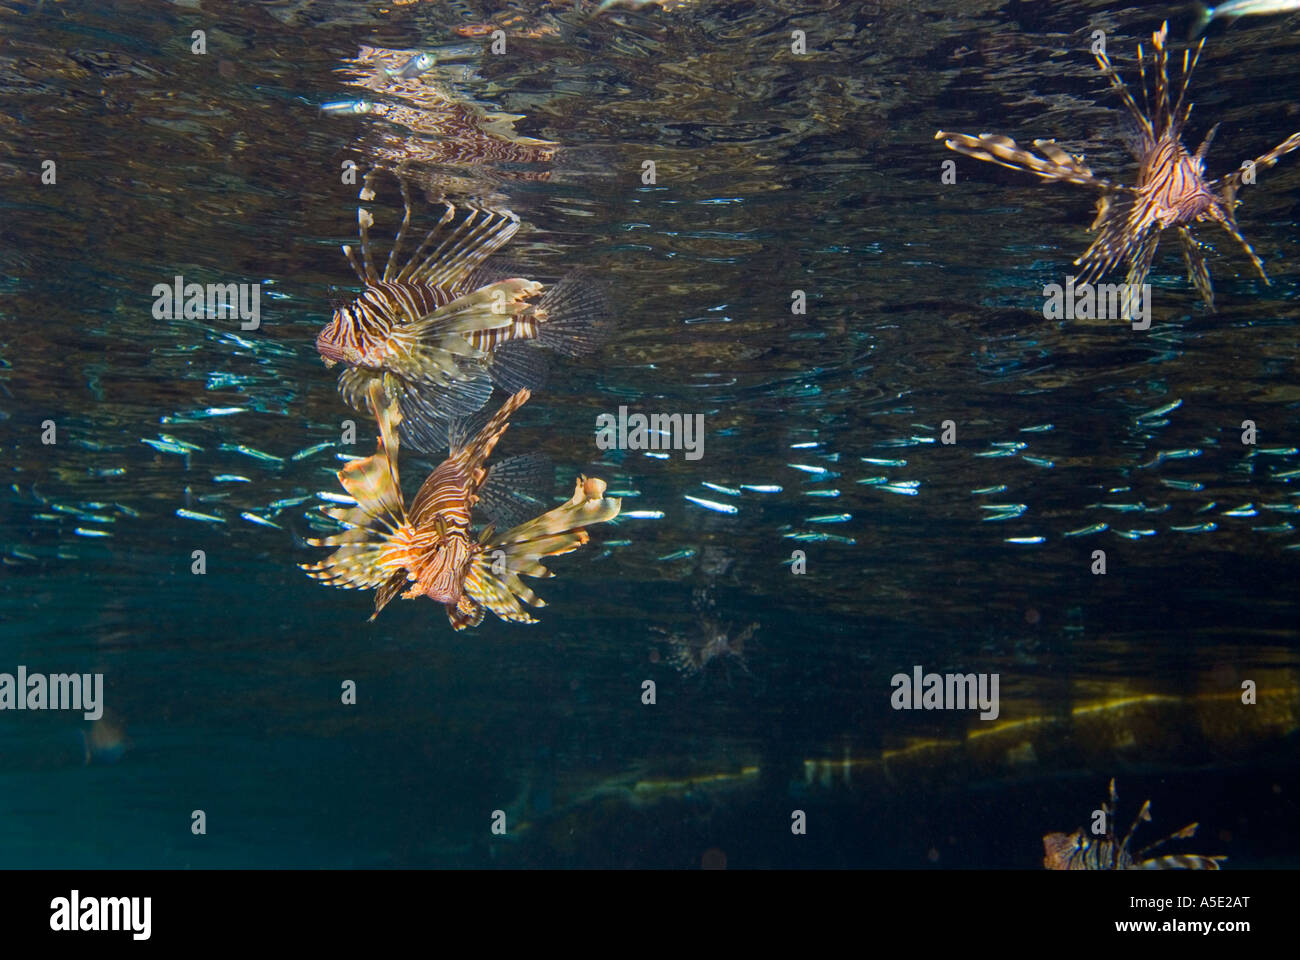 2 poisson PTEROIS VOLITANS redfire firefish poisson lion lion dans turkeyfish paysage récifs coralliens de la baie de Naama HADABA Sharm El Sheikh Égypte Banque D'Images